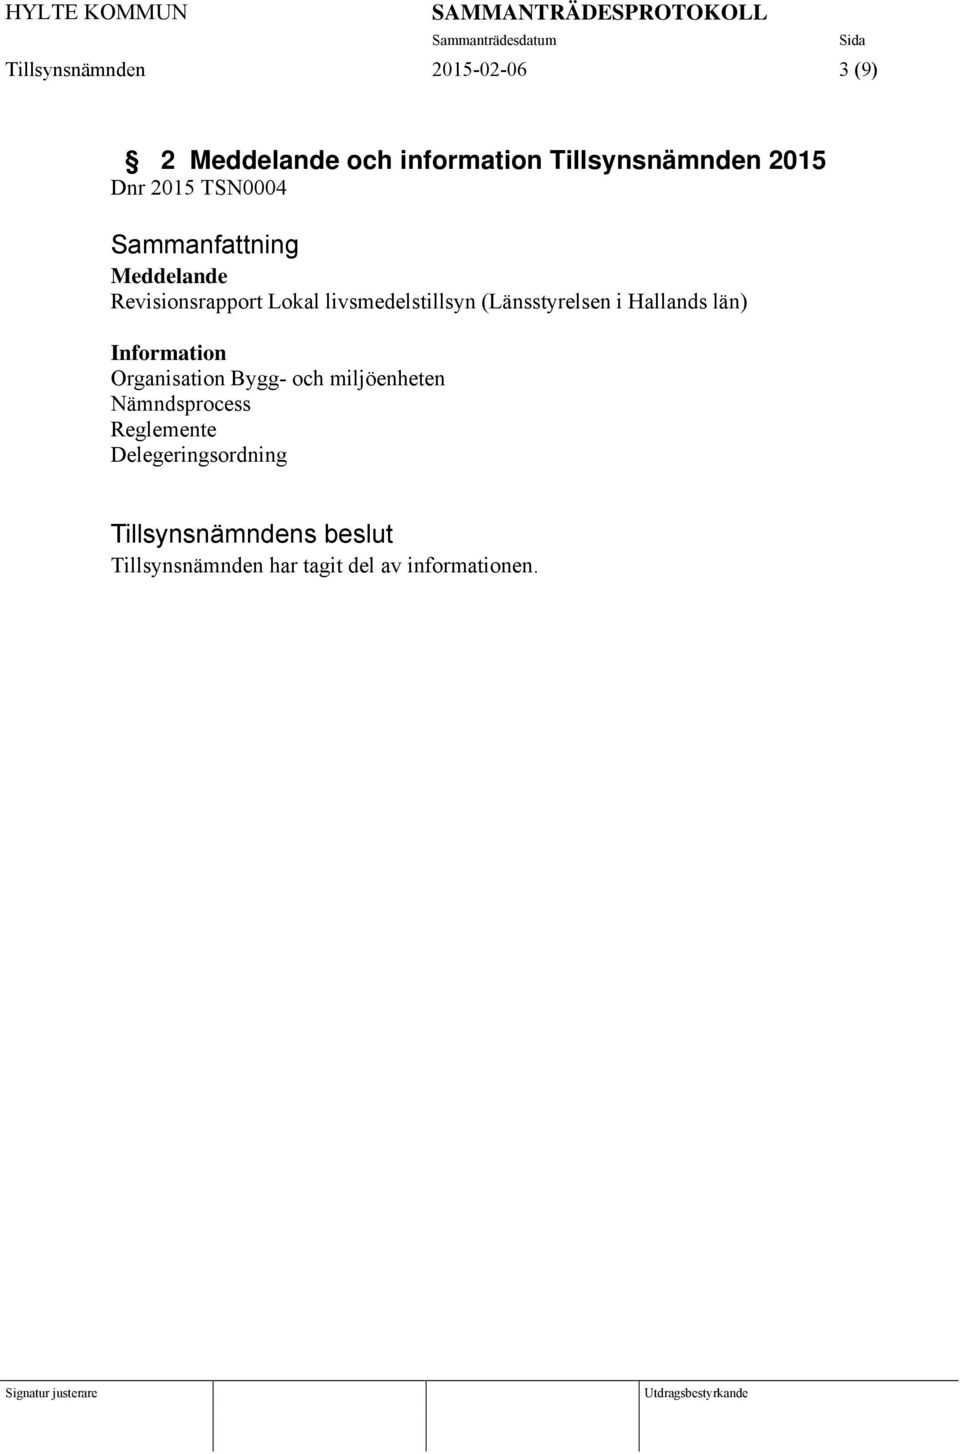 (Länsstyrelsen i Hallands län) Information Organisation Bygg- och miljöenheten